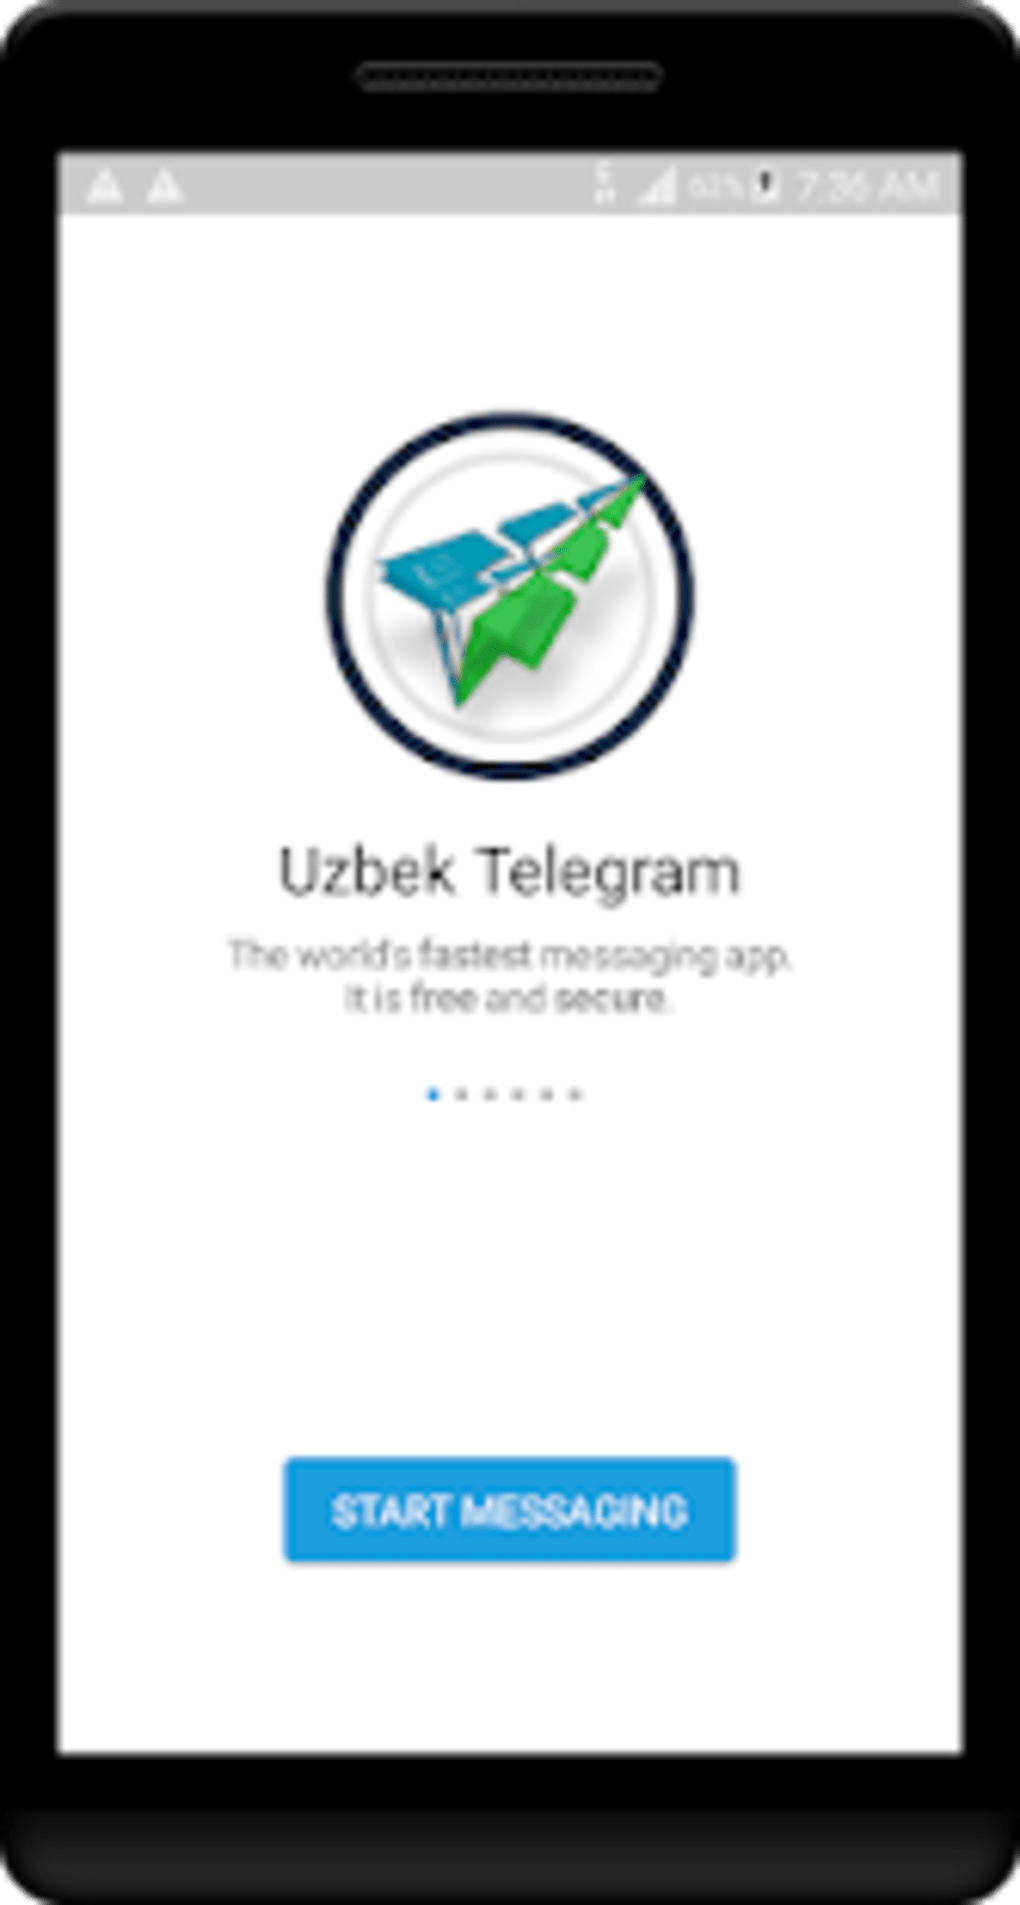 Скачать телеграмм бесплатно на андроид на русском языке последняя версия бесплатно без регистрации фото 95